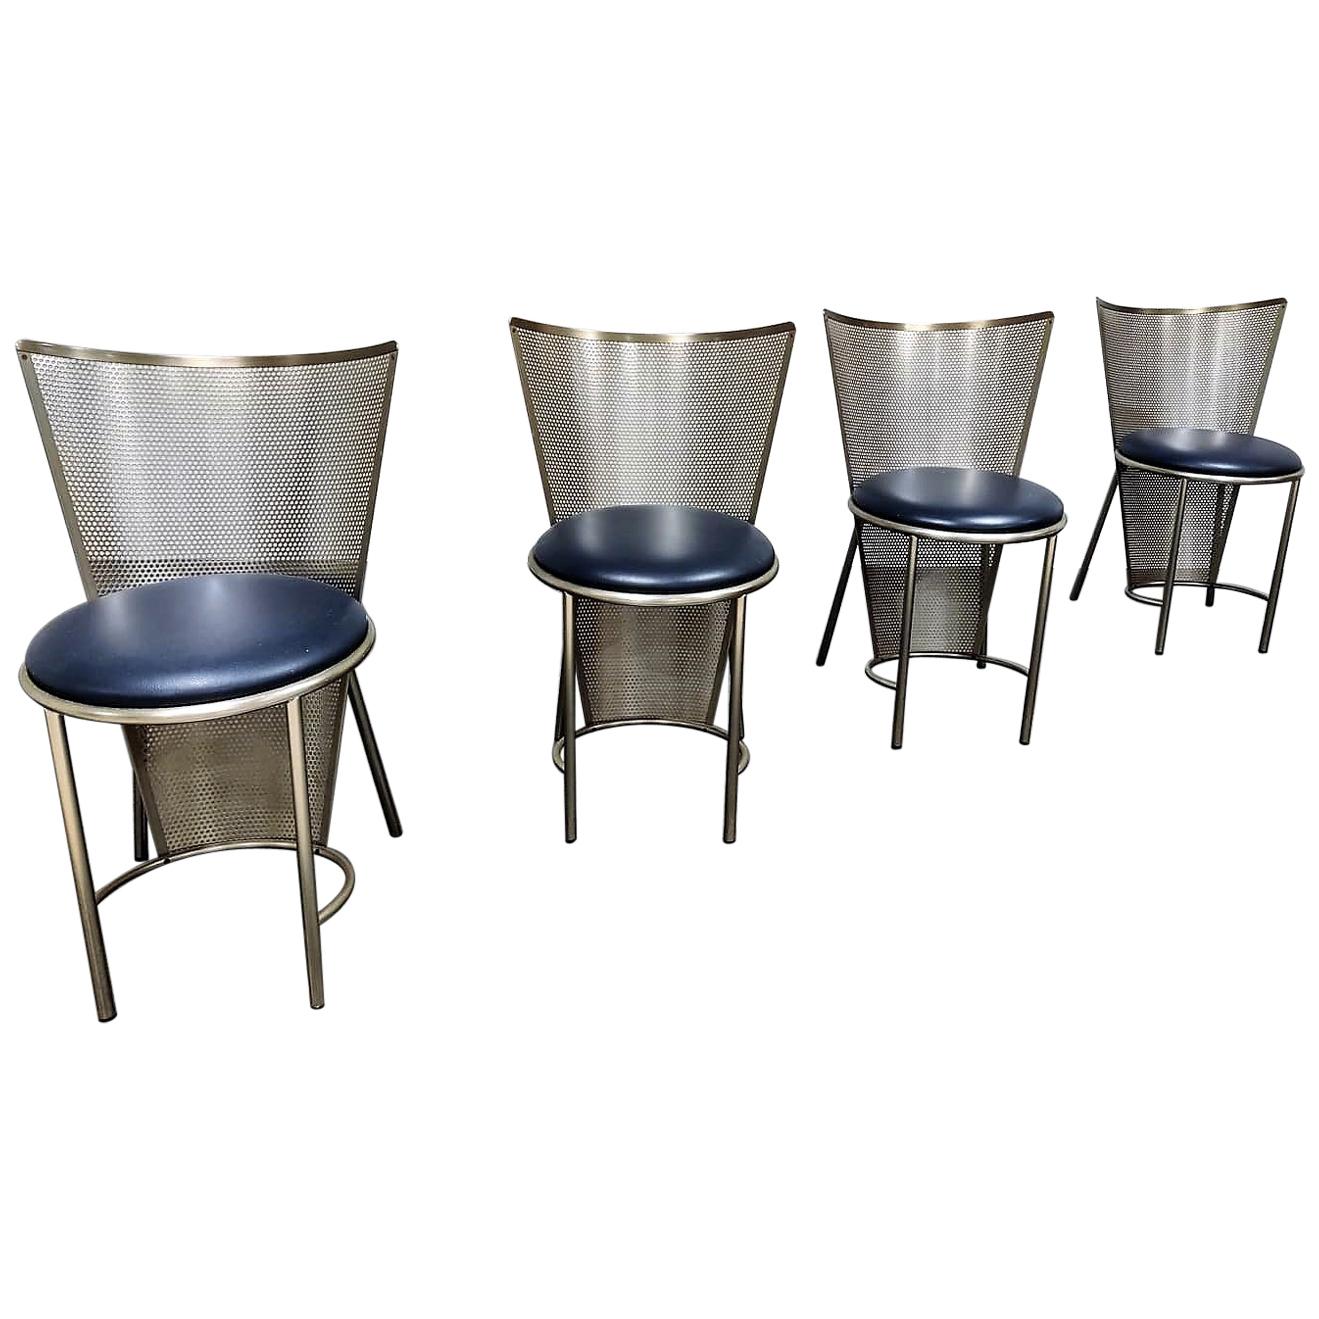 Vintage Dining Chairs by Frans Van Praet, Set of 4